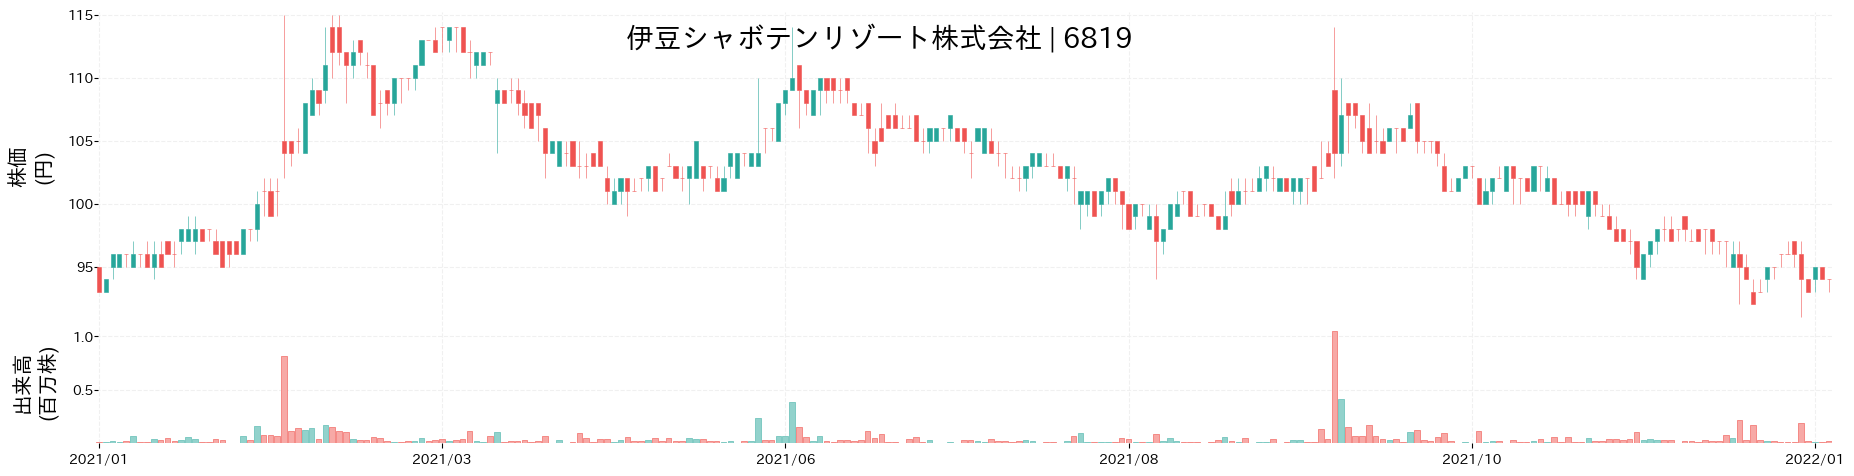 伊豆シャボテンリゾートの株価推移(2021)